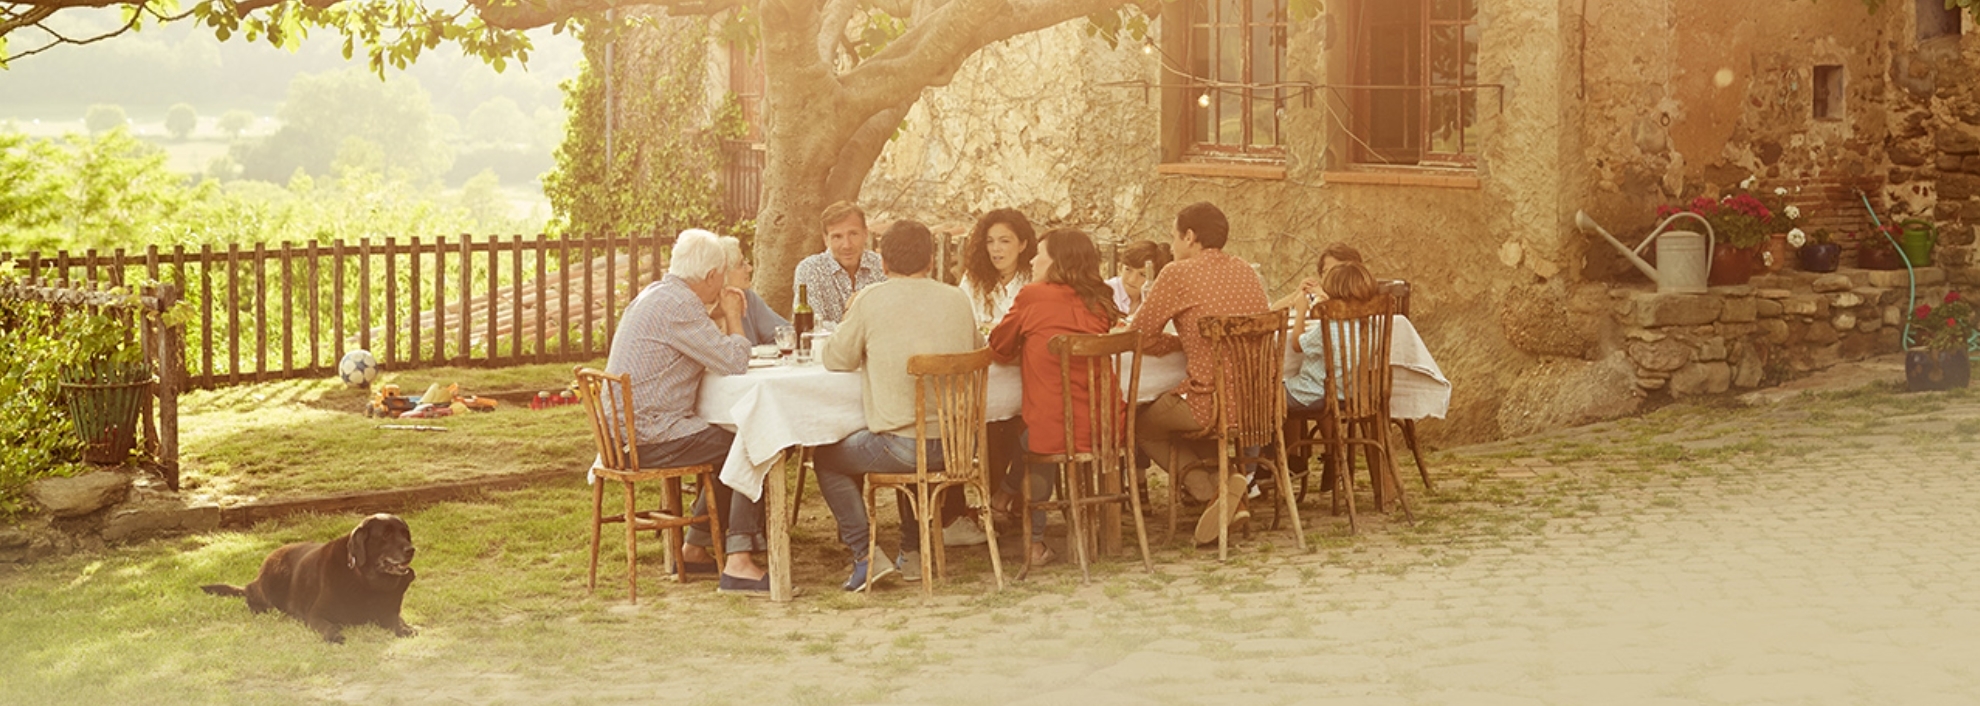 Family eating dinner outside